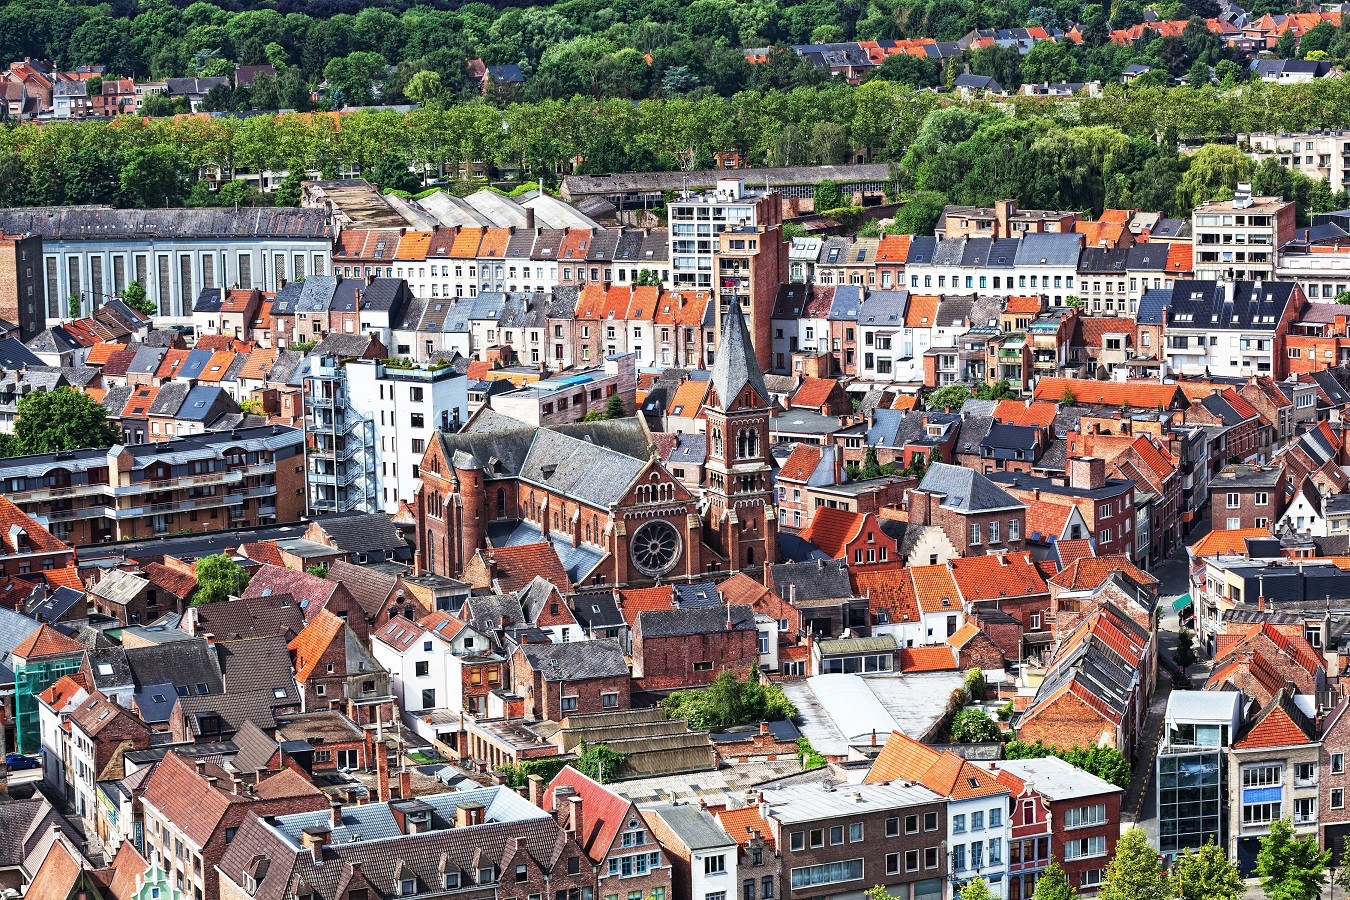 Mechelen lanceert Bomenkaart voor inwoners